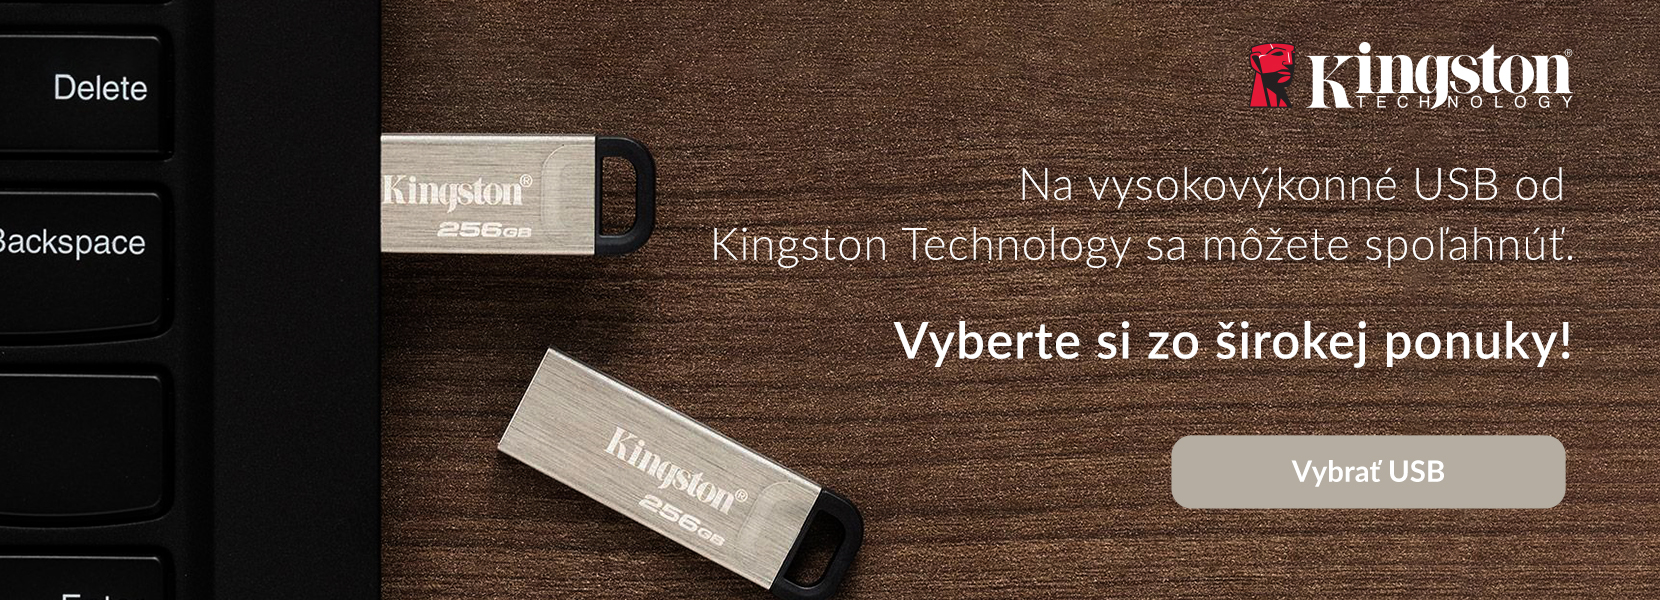 Vysoko výkonné USB od Kingston Technology